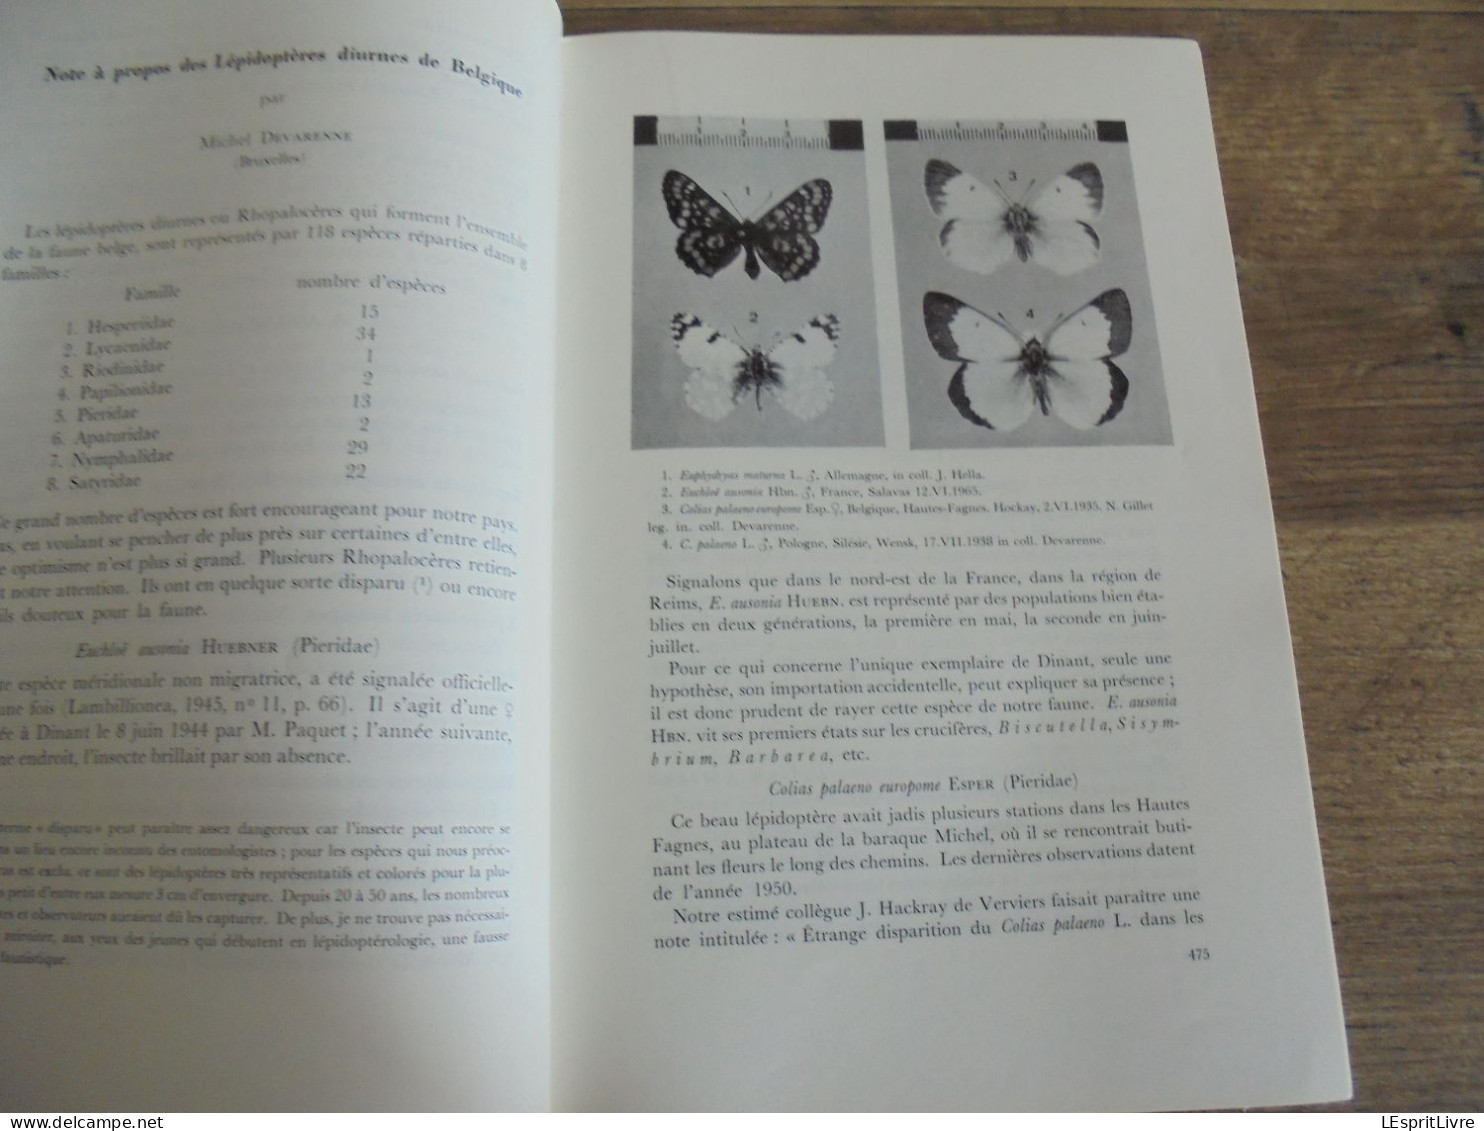 LES NATURALISTES BELGES N° 9 Année 1971 Régionalisme Végétation des Murs Papillons Lépidoptères Botanique Flore